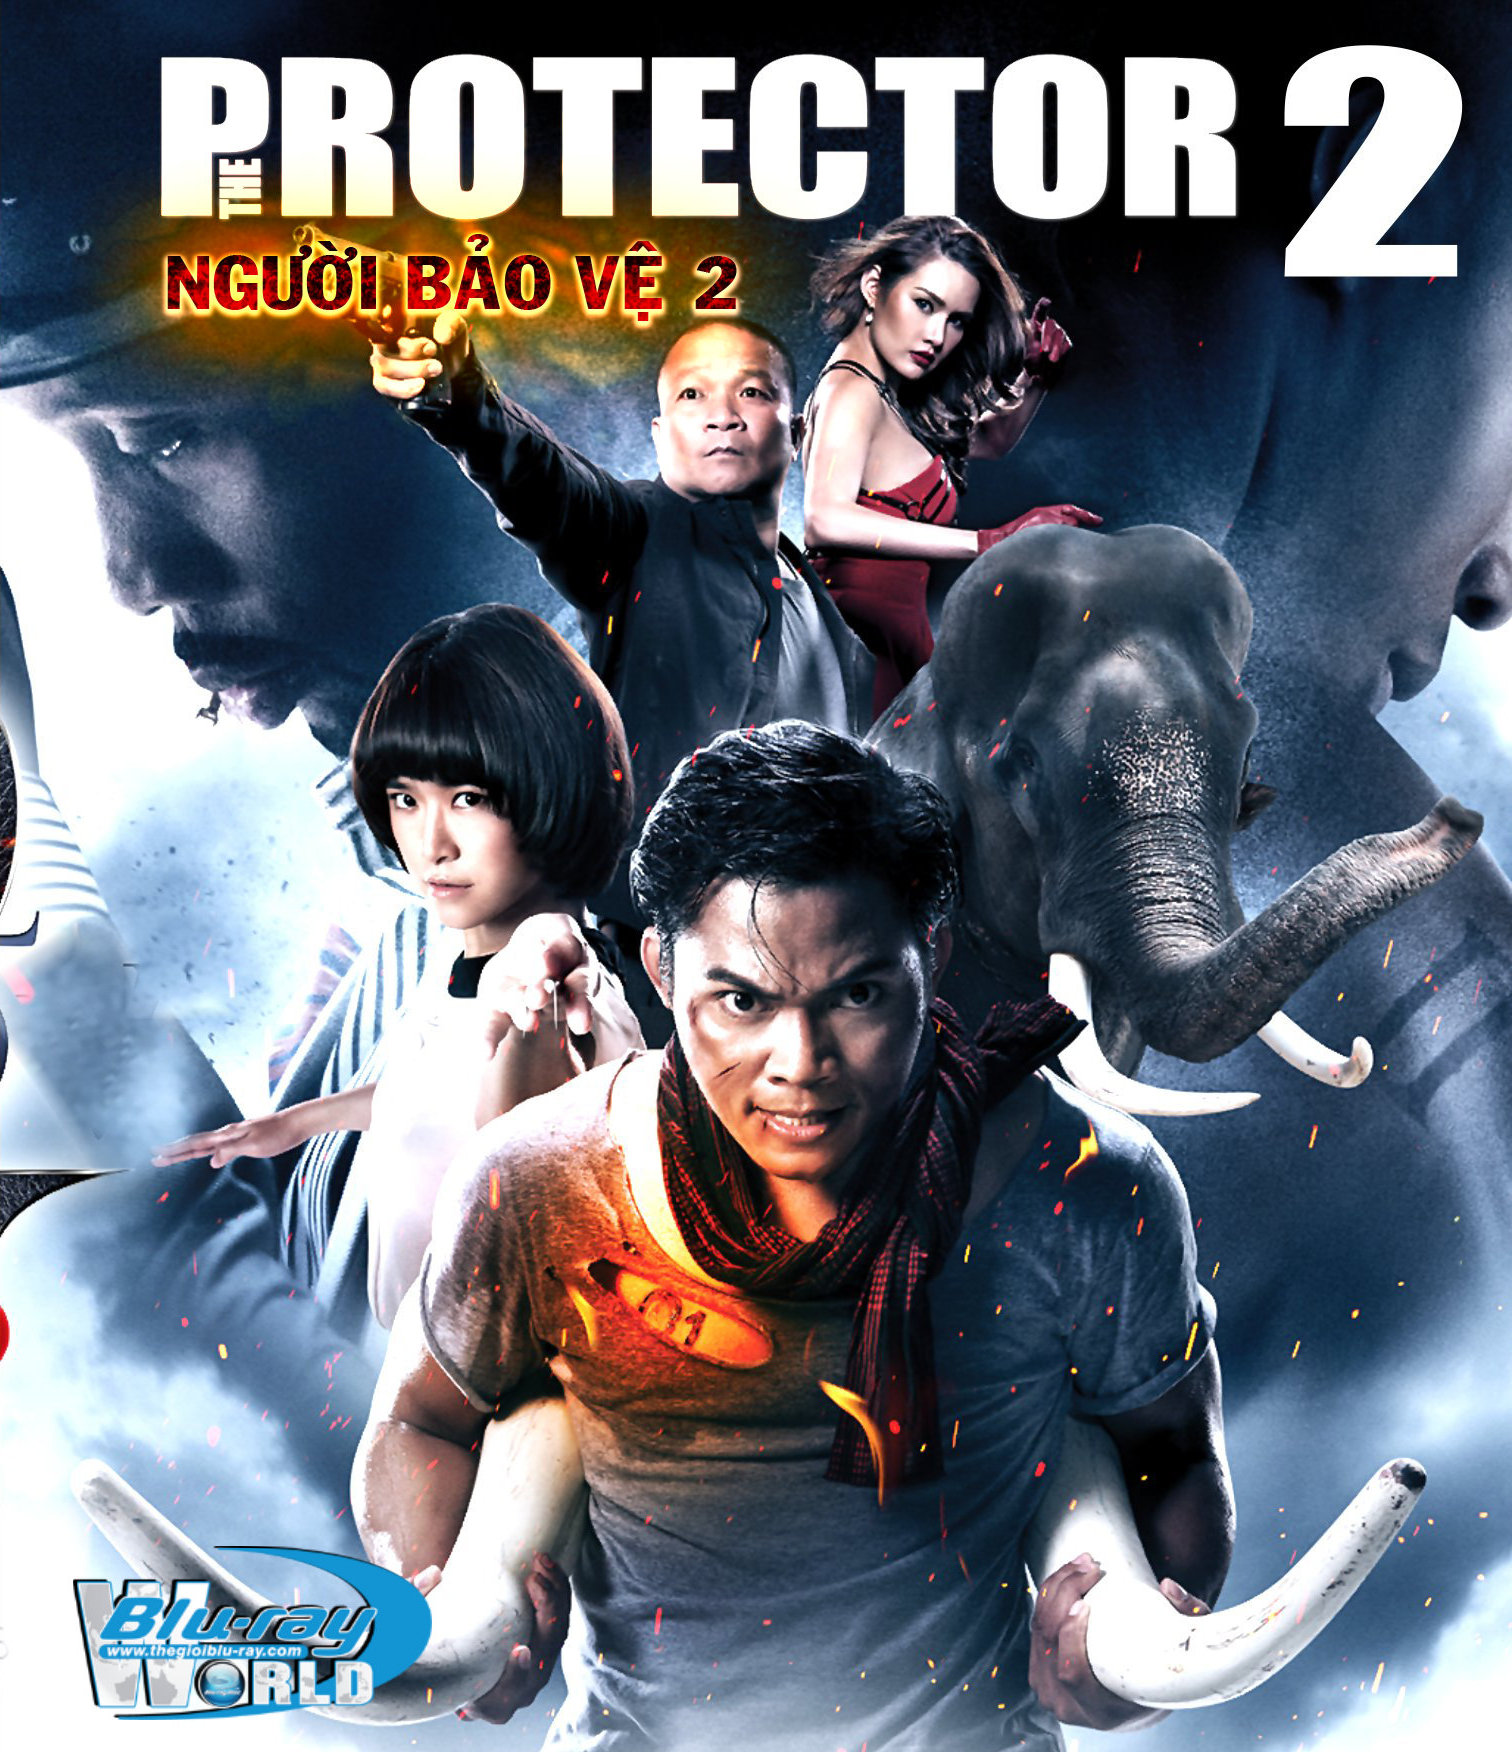 B1704. The Protector 2 - NGƯỜI BẢO VỆ 2 2D 25G (DTS-HD MA 5.1)